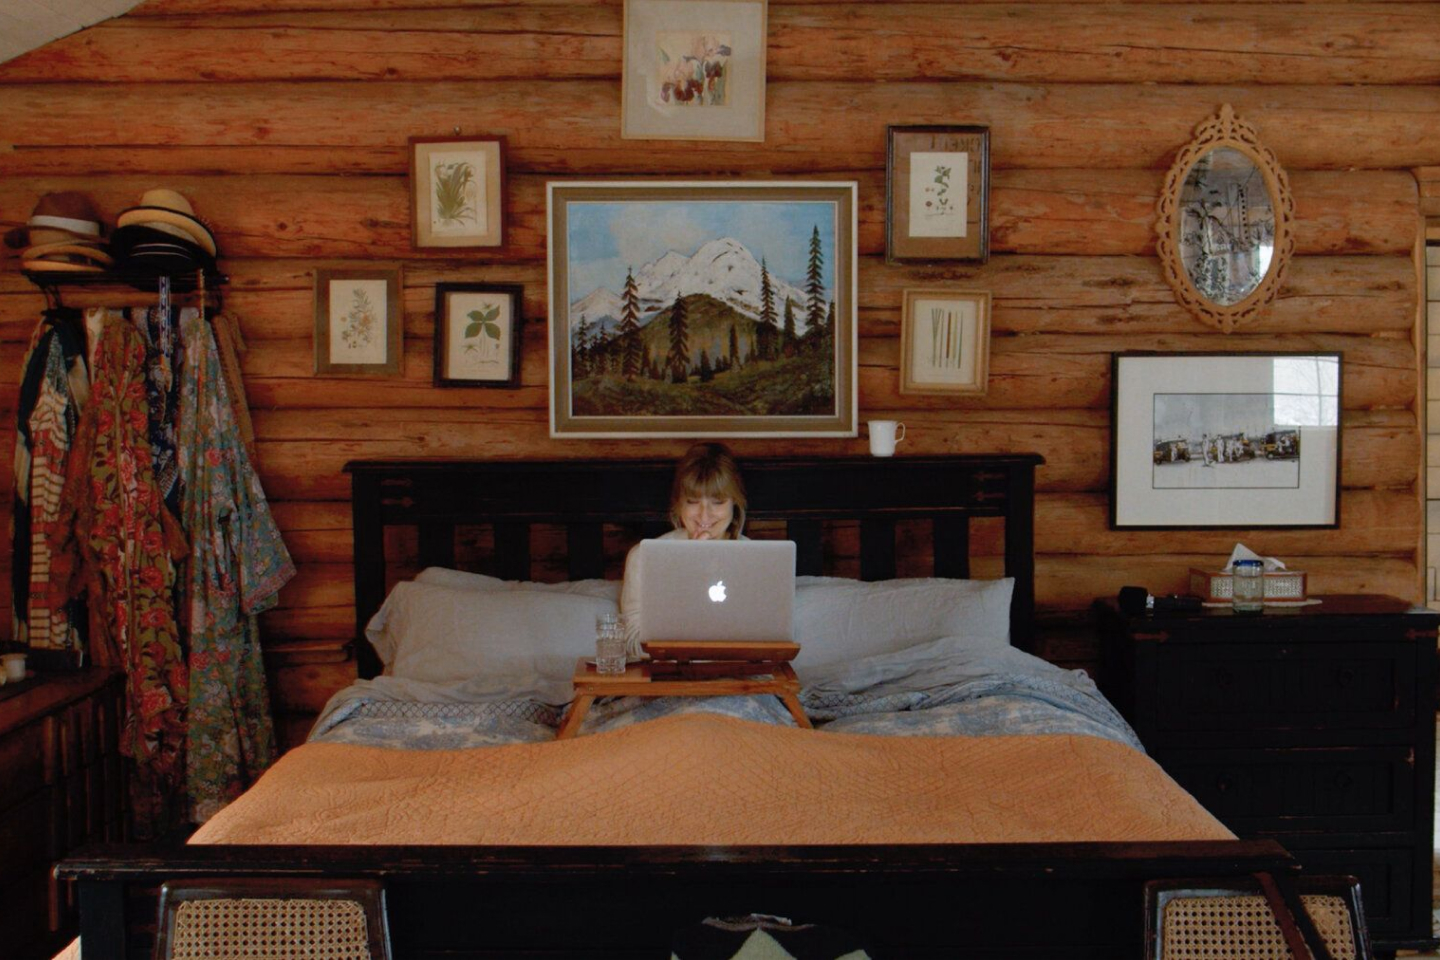 Una persona che lavora su un MacBook mentre è a letto in una stanza con dei pannelli in legno.